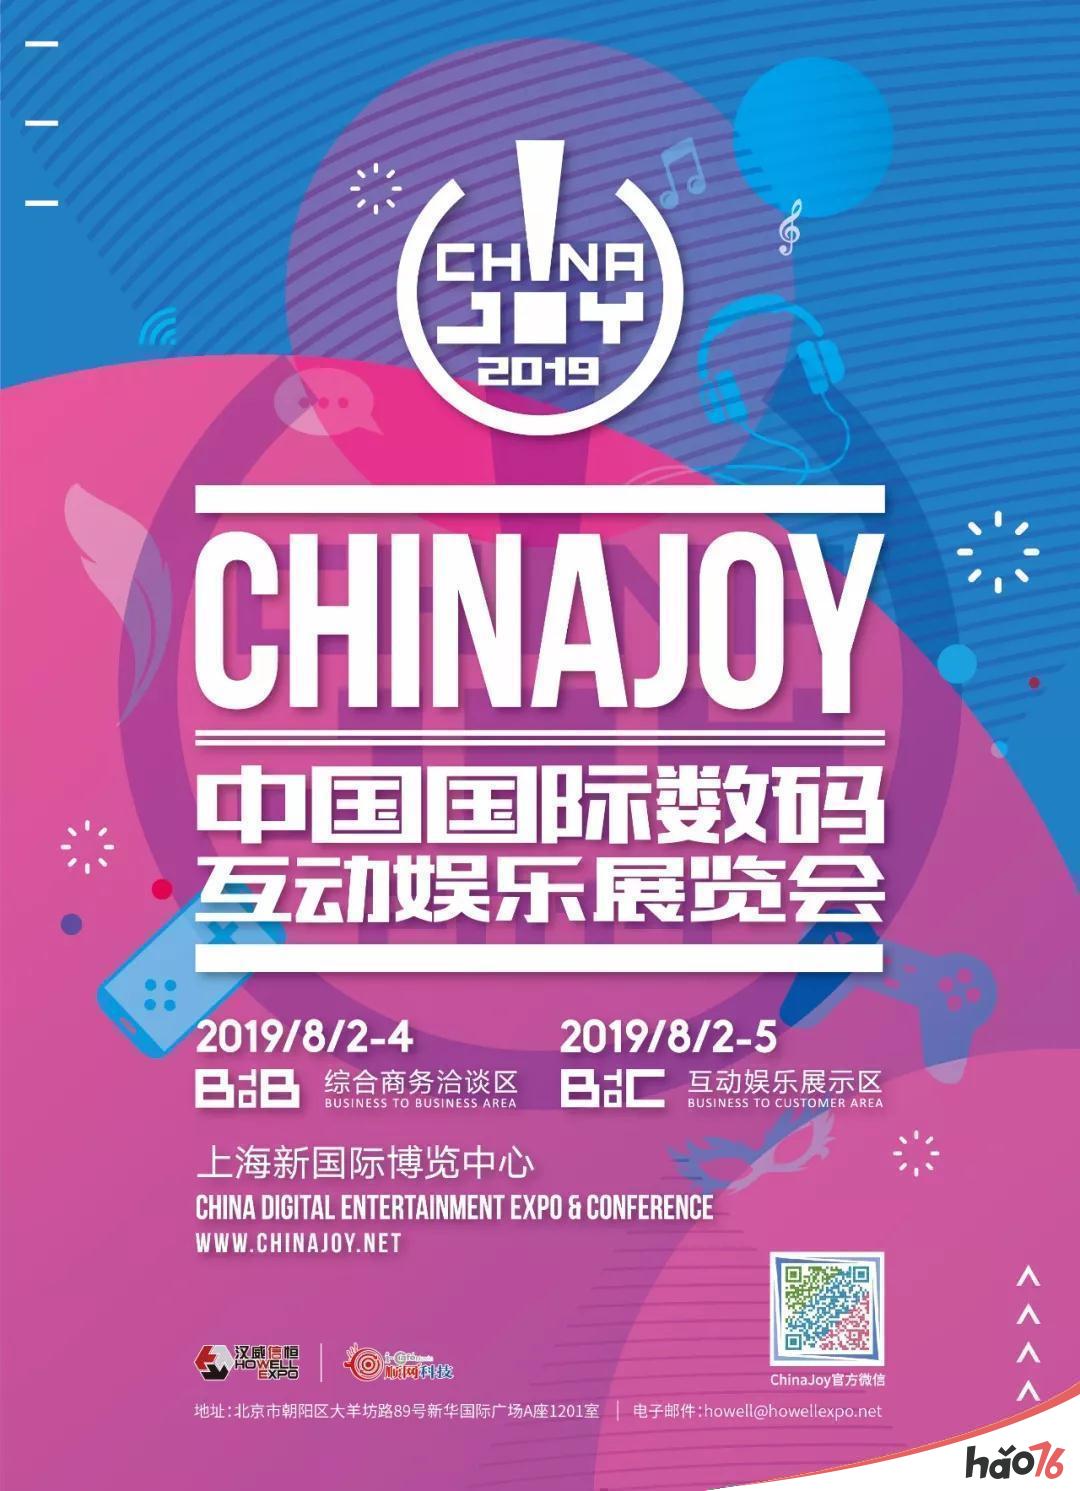 聚量传媒将在2019ChinaJoyBTOB展区精彩亮相